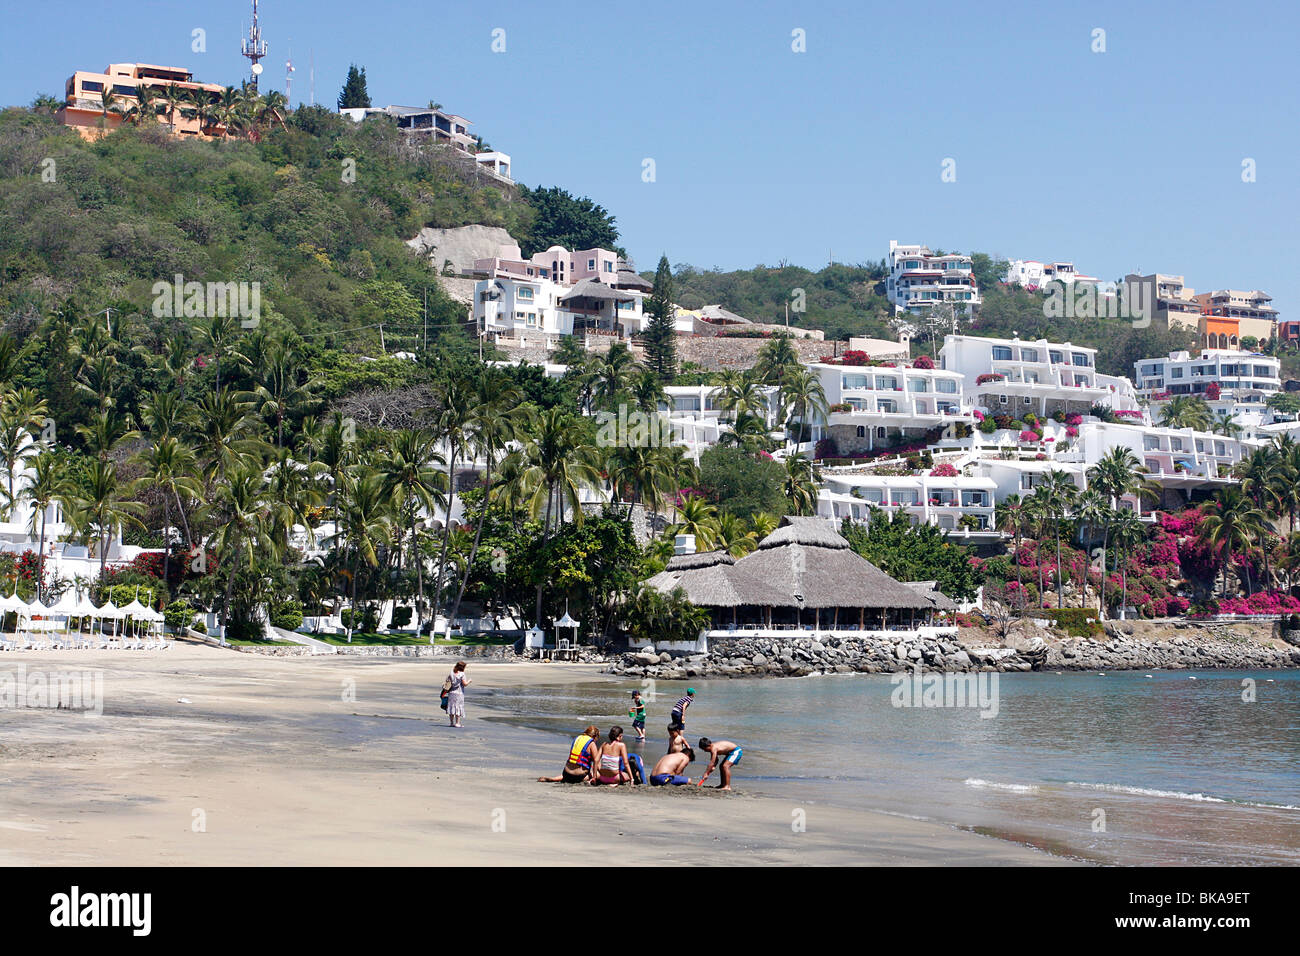 Sandy holiday beach at the famous beach resort of Manzanillo,Mexico. Stock Photo